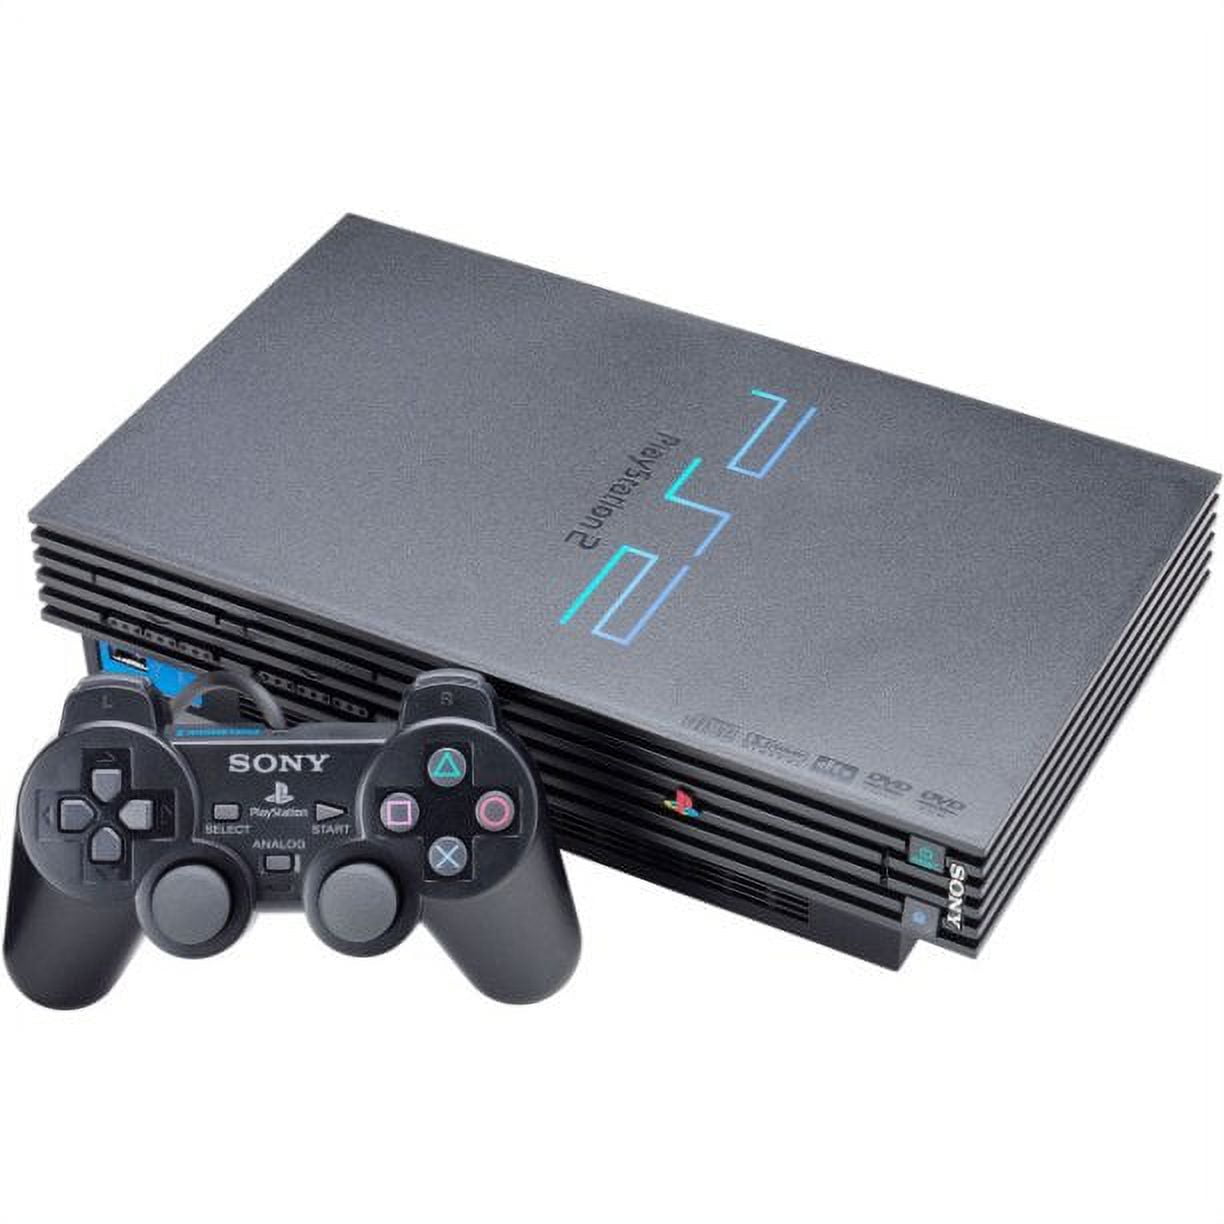 Comprar Juegos PlayStation 5 online · Hipercor (113)